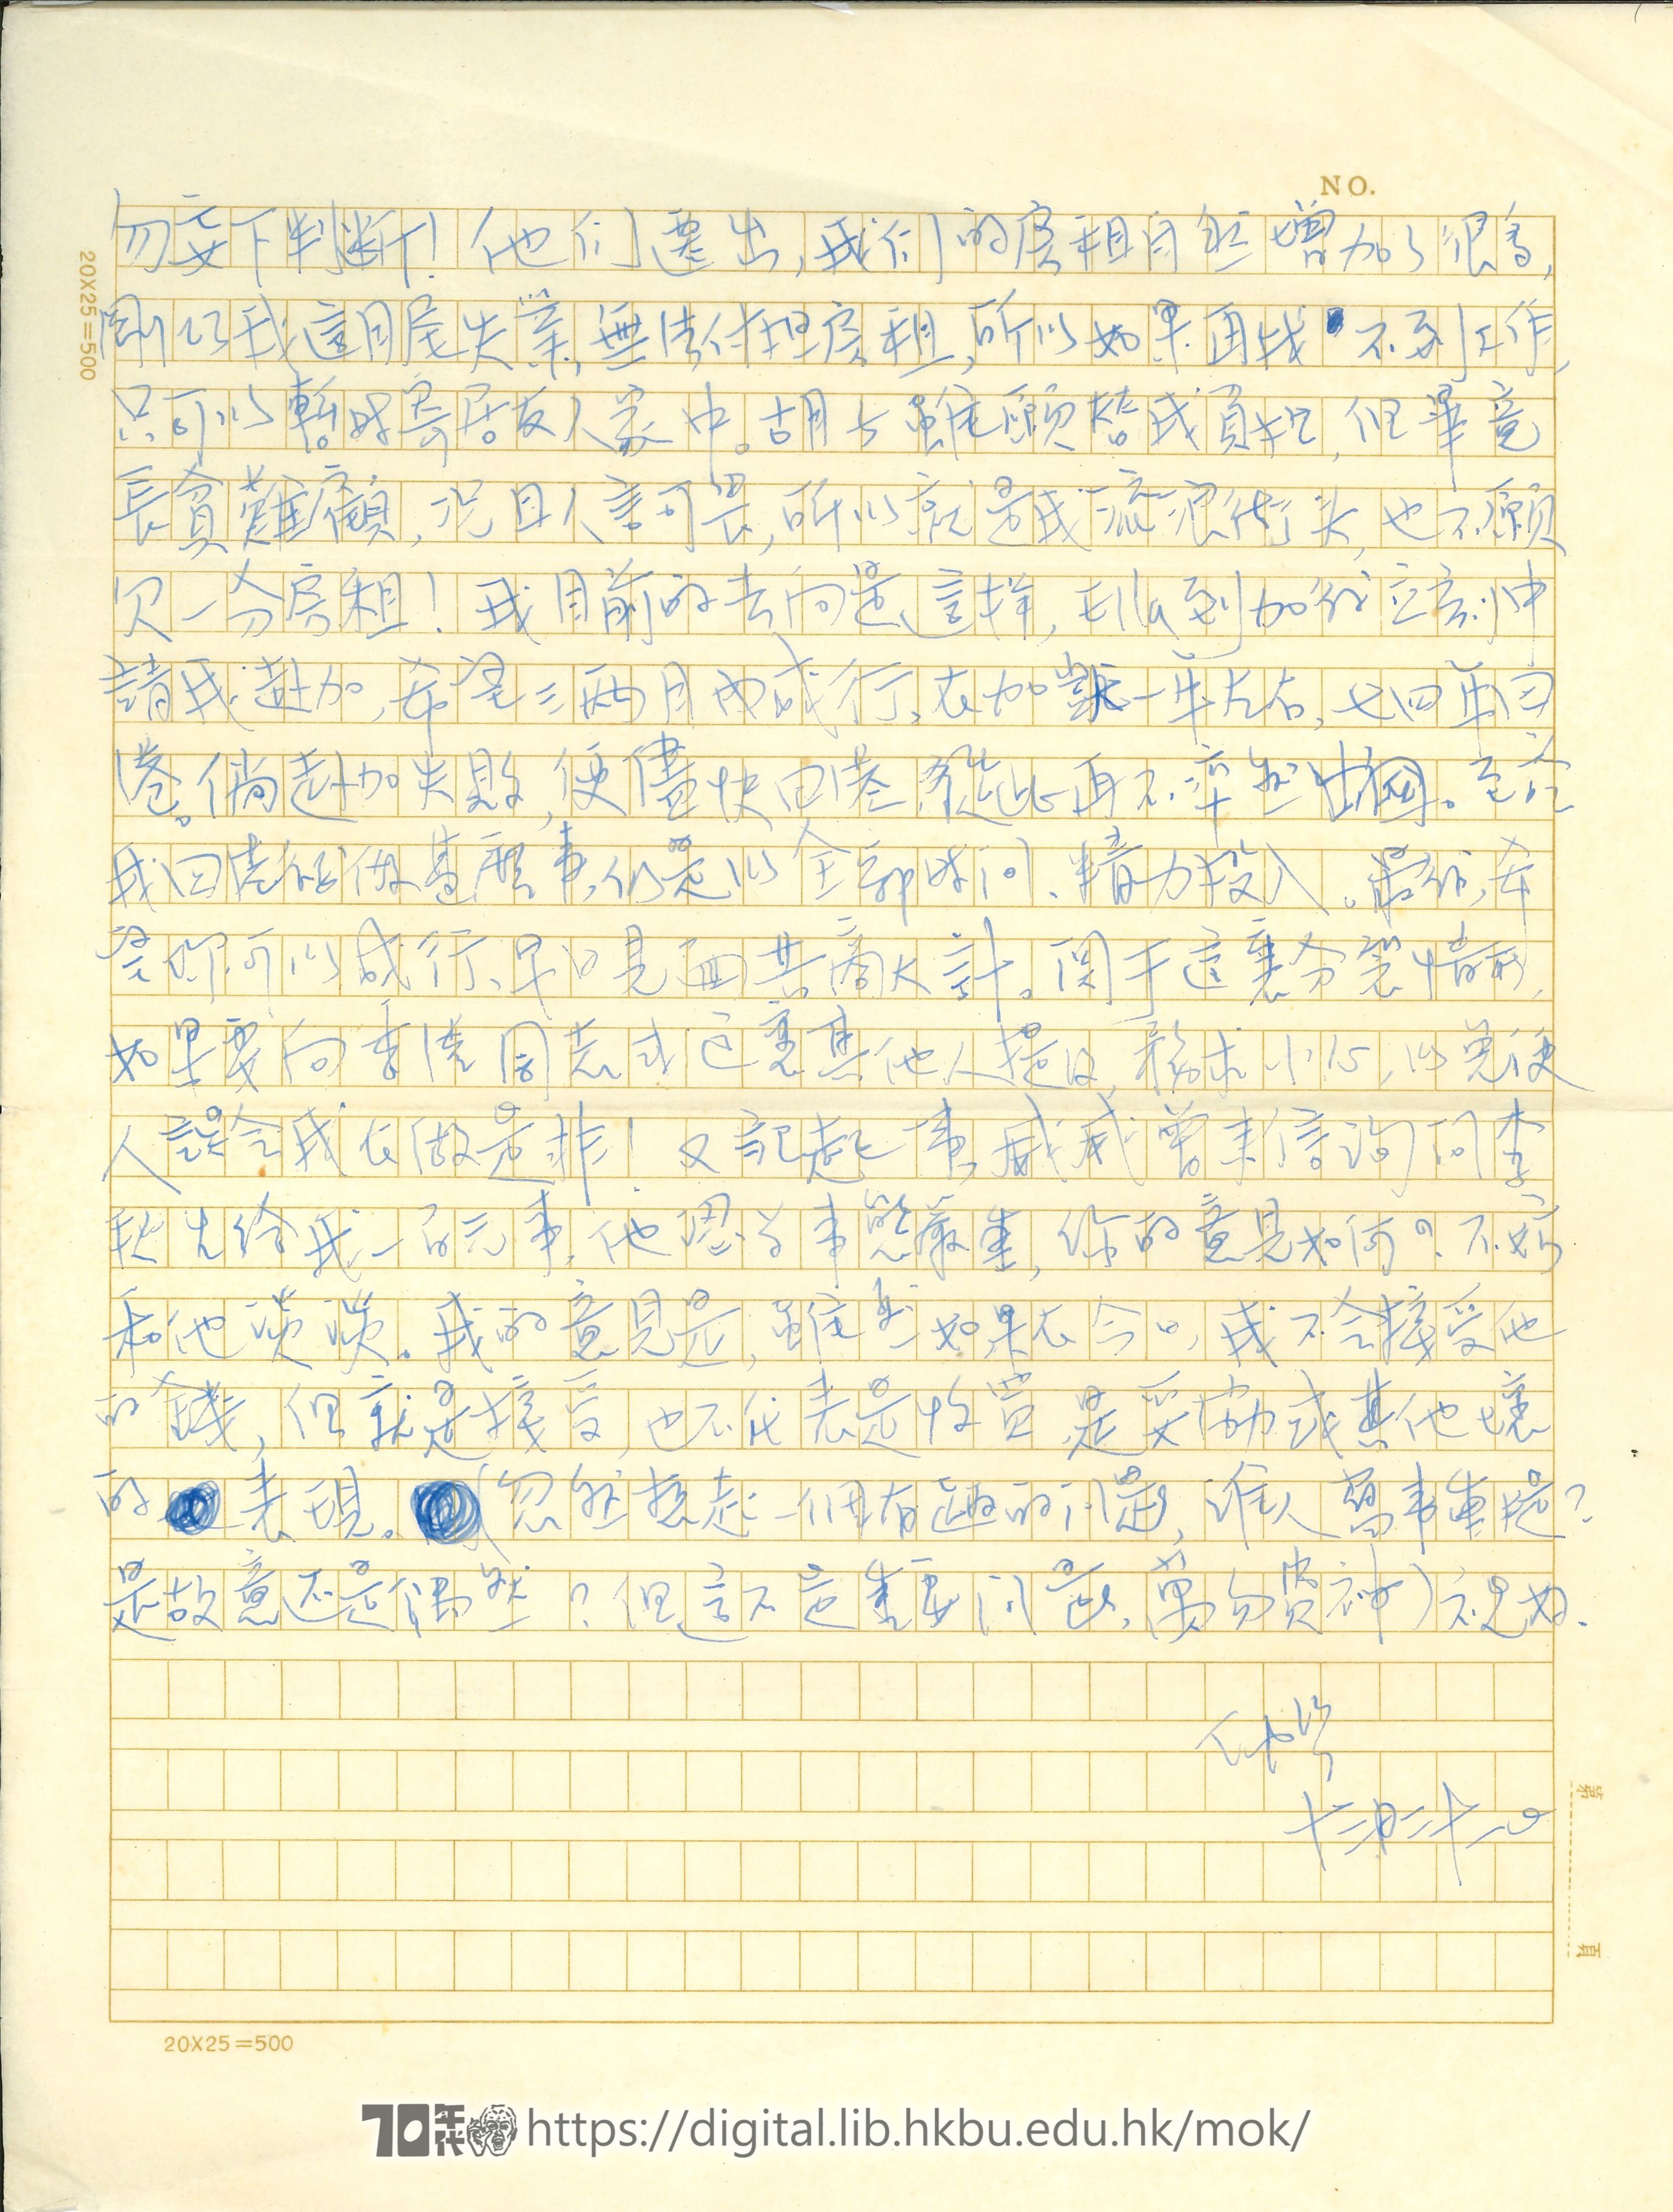   Letter ftom Ng Chung Yin to Mok Chiu Yu NG, Chung Yin 